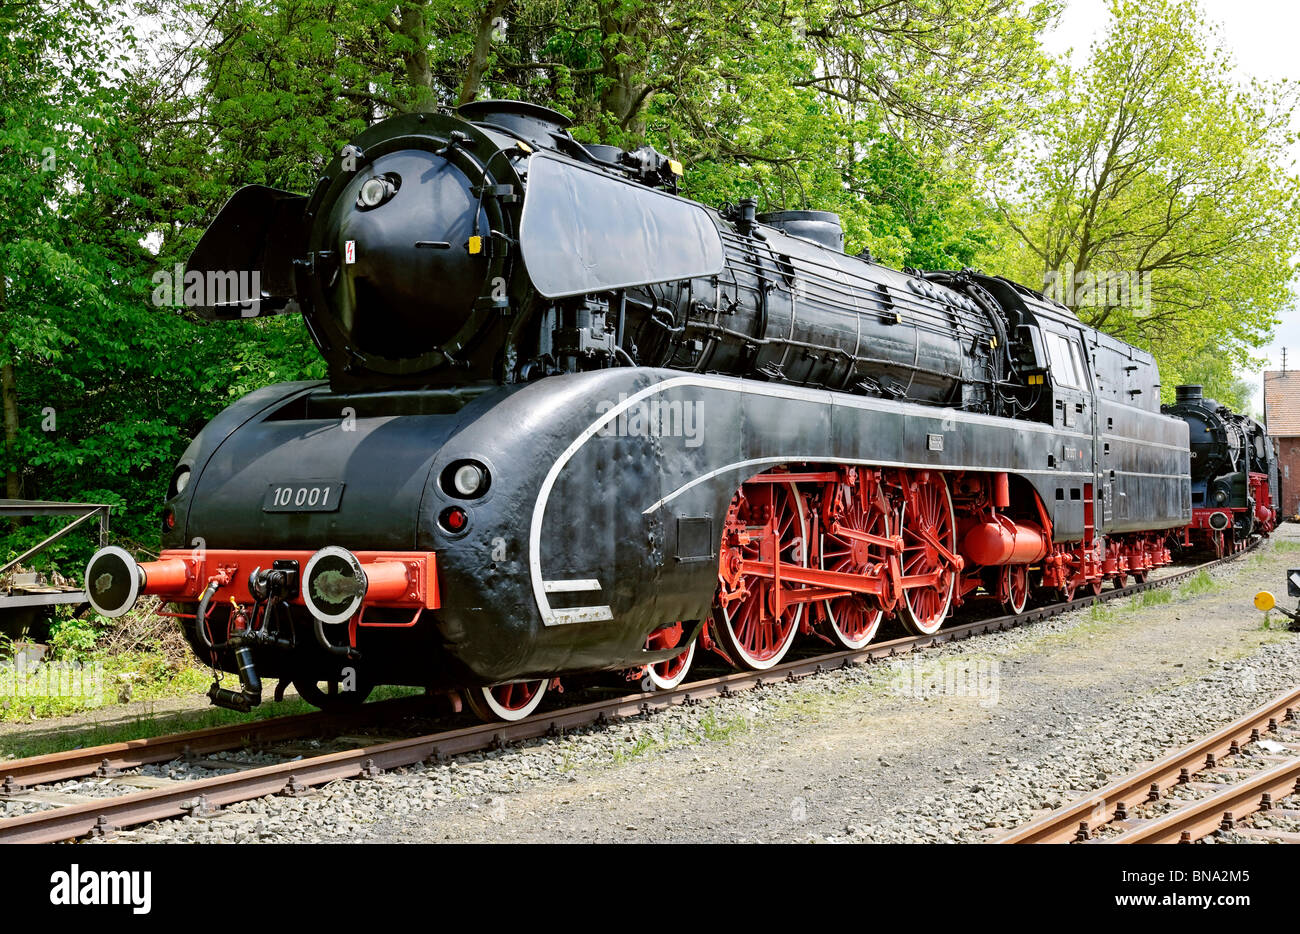 Steam locomotives at 'German Steam Locomotive Museum', Neuenmarkt, Bavaria, Germany. Stock Photo